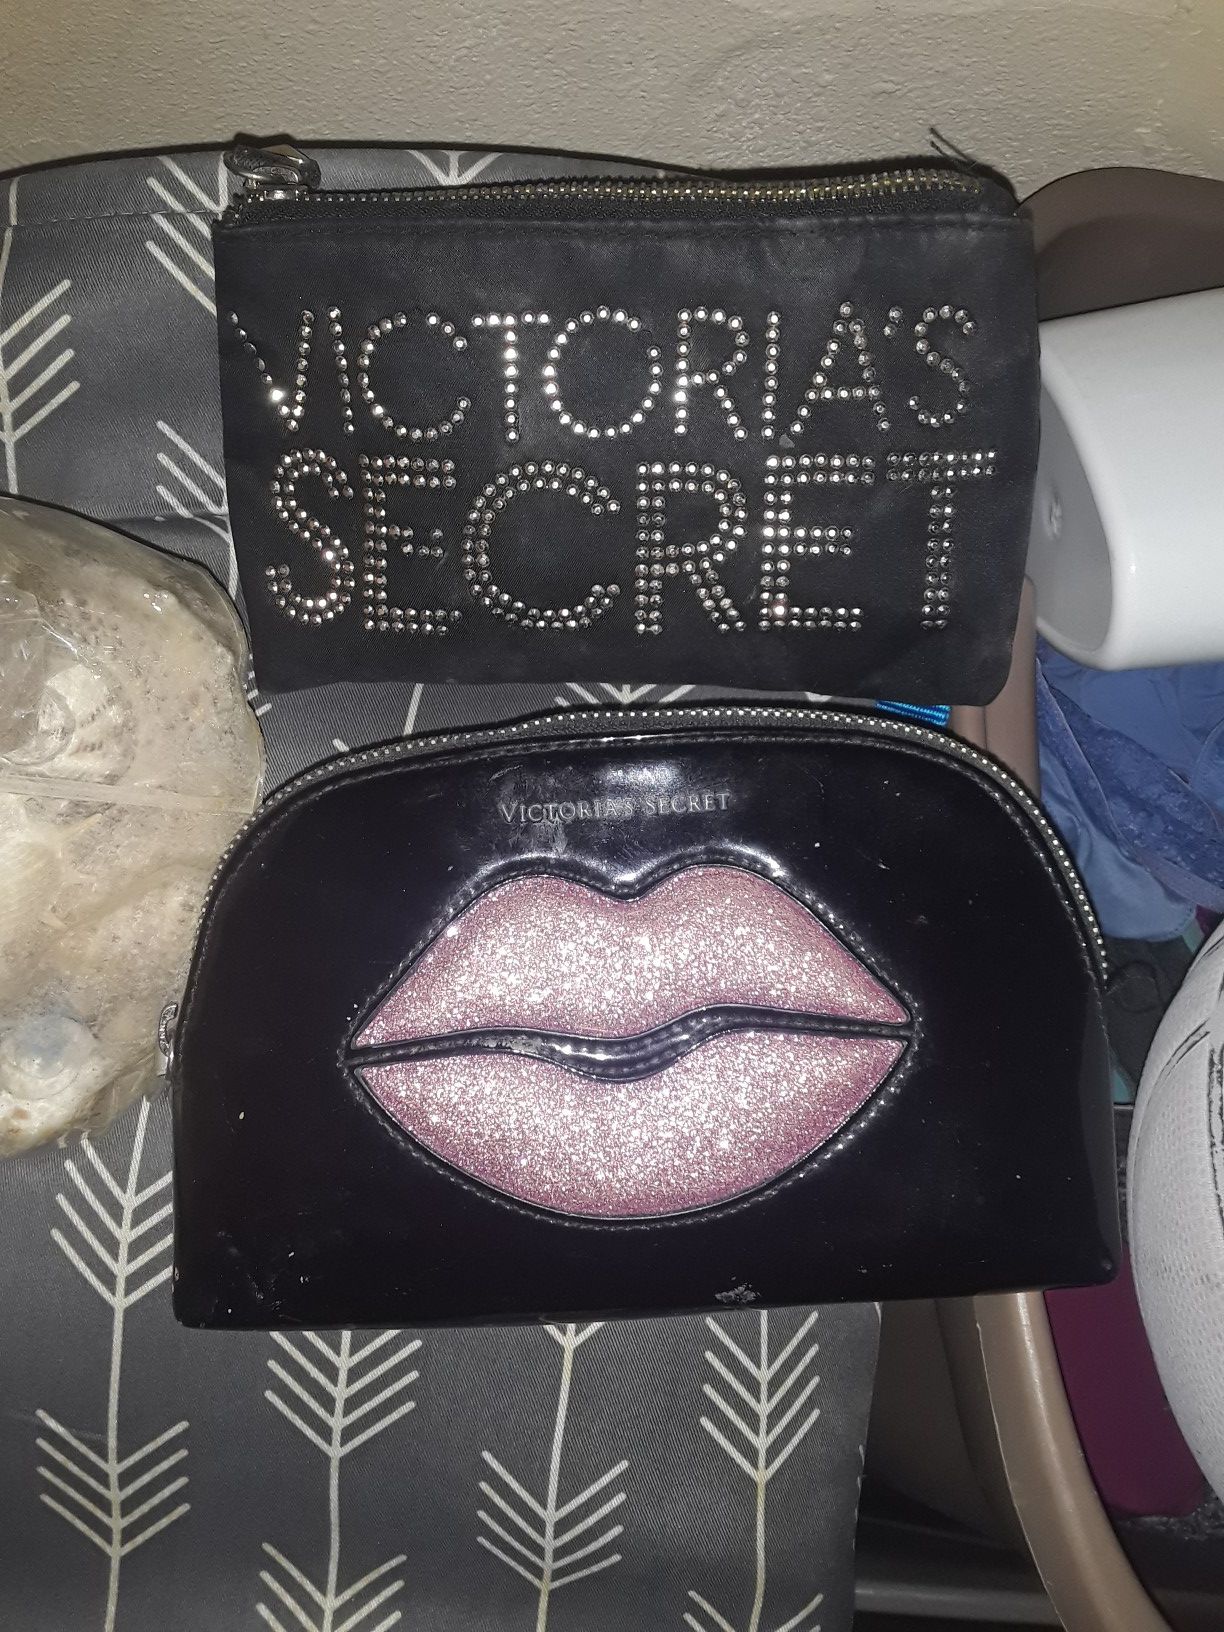 Victoria secret makeup bags